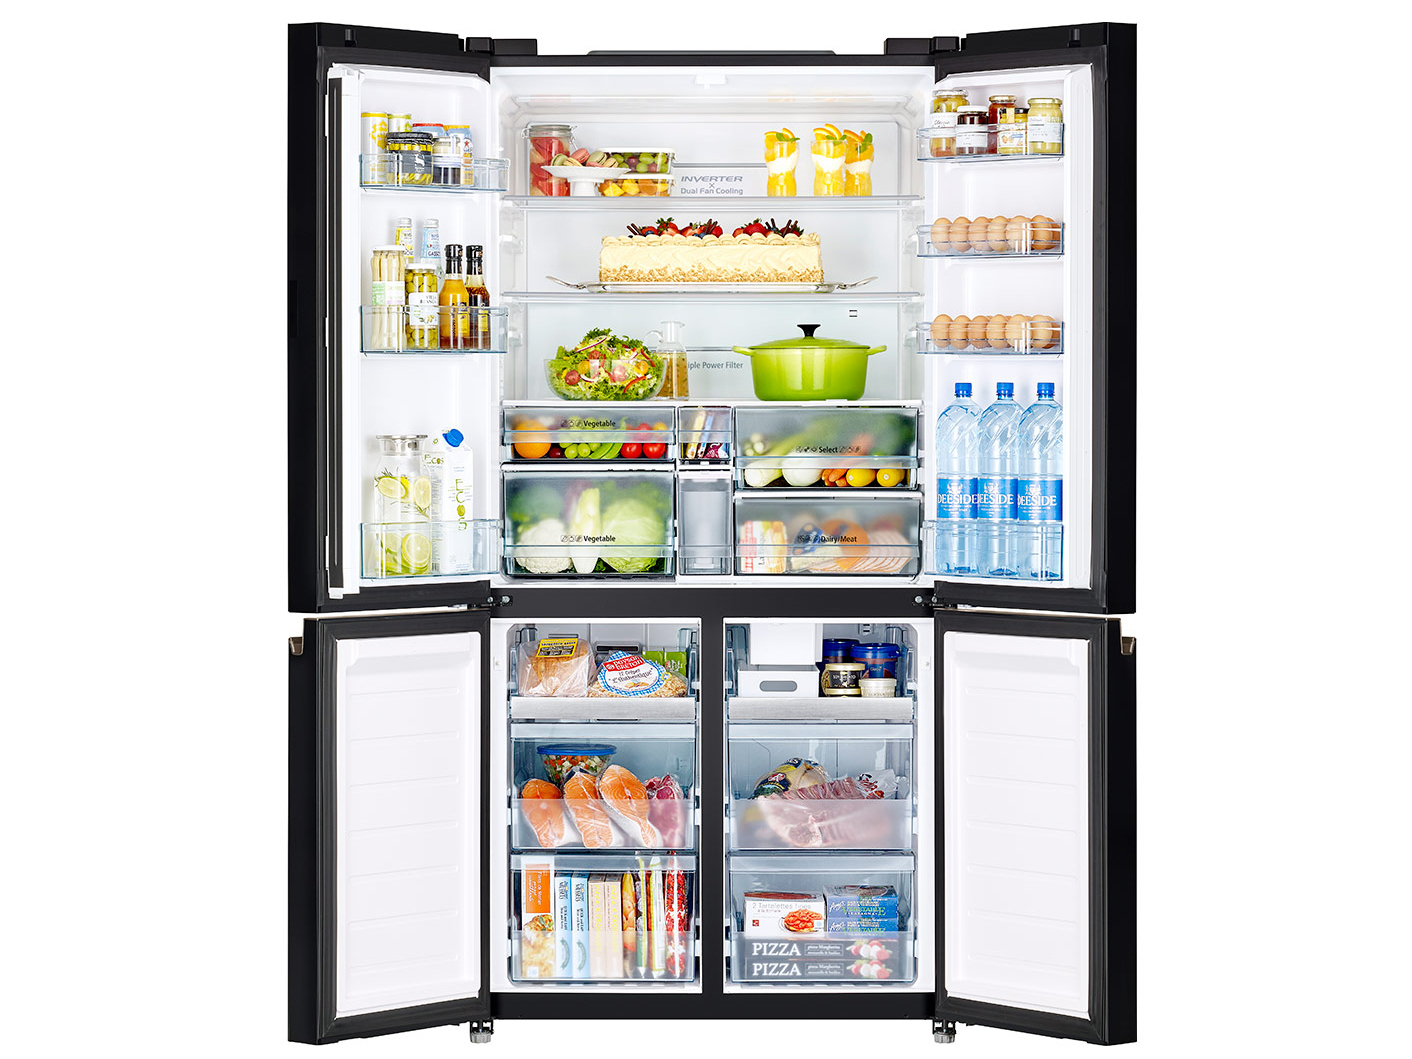 Ron tủ lạnh có chức năng giữ lạnh không khí trong tủ lạnh 